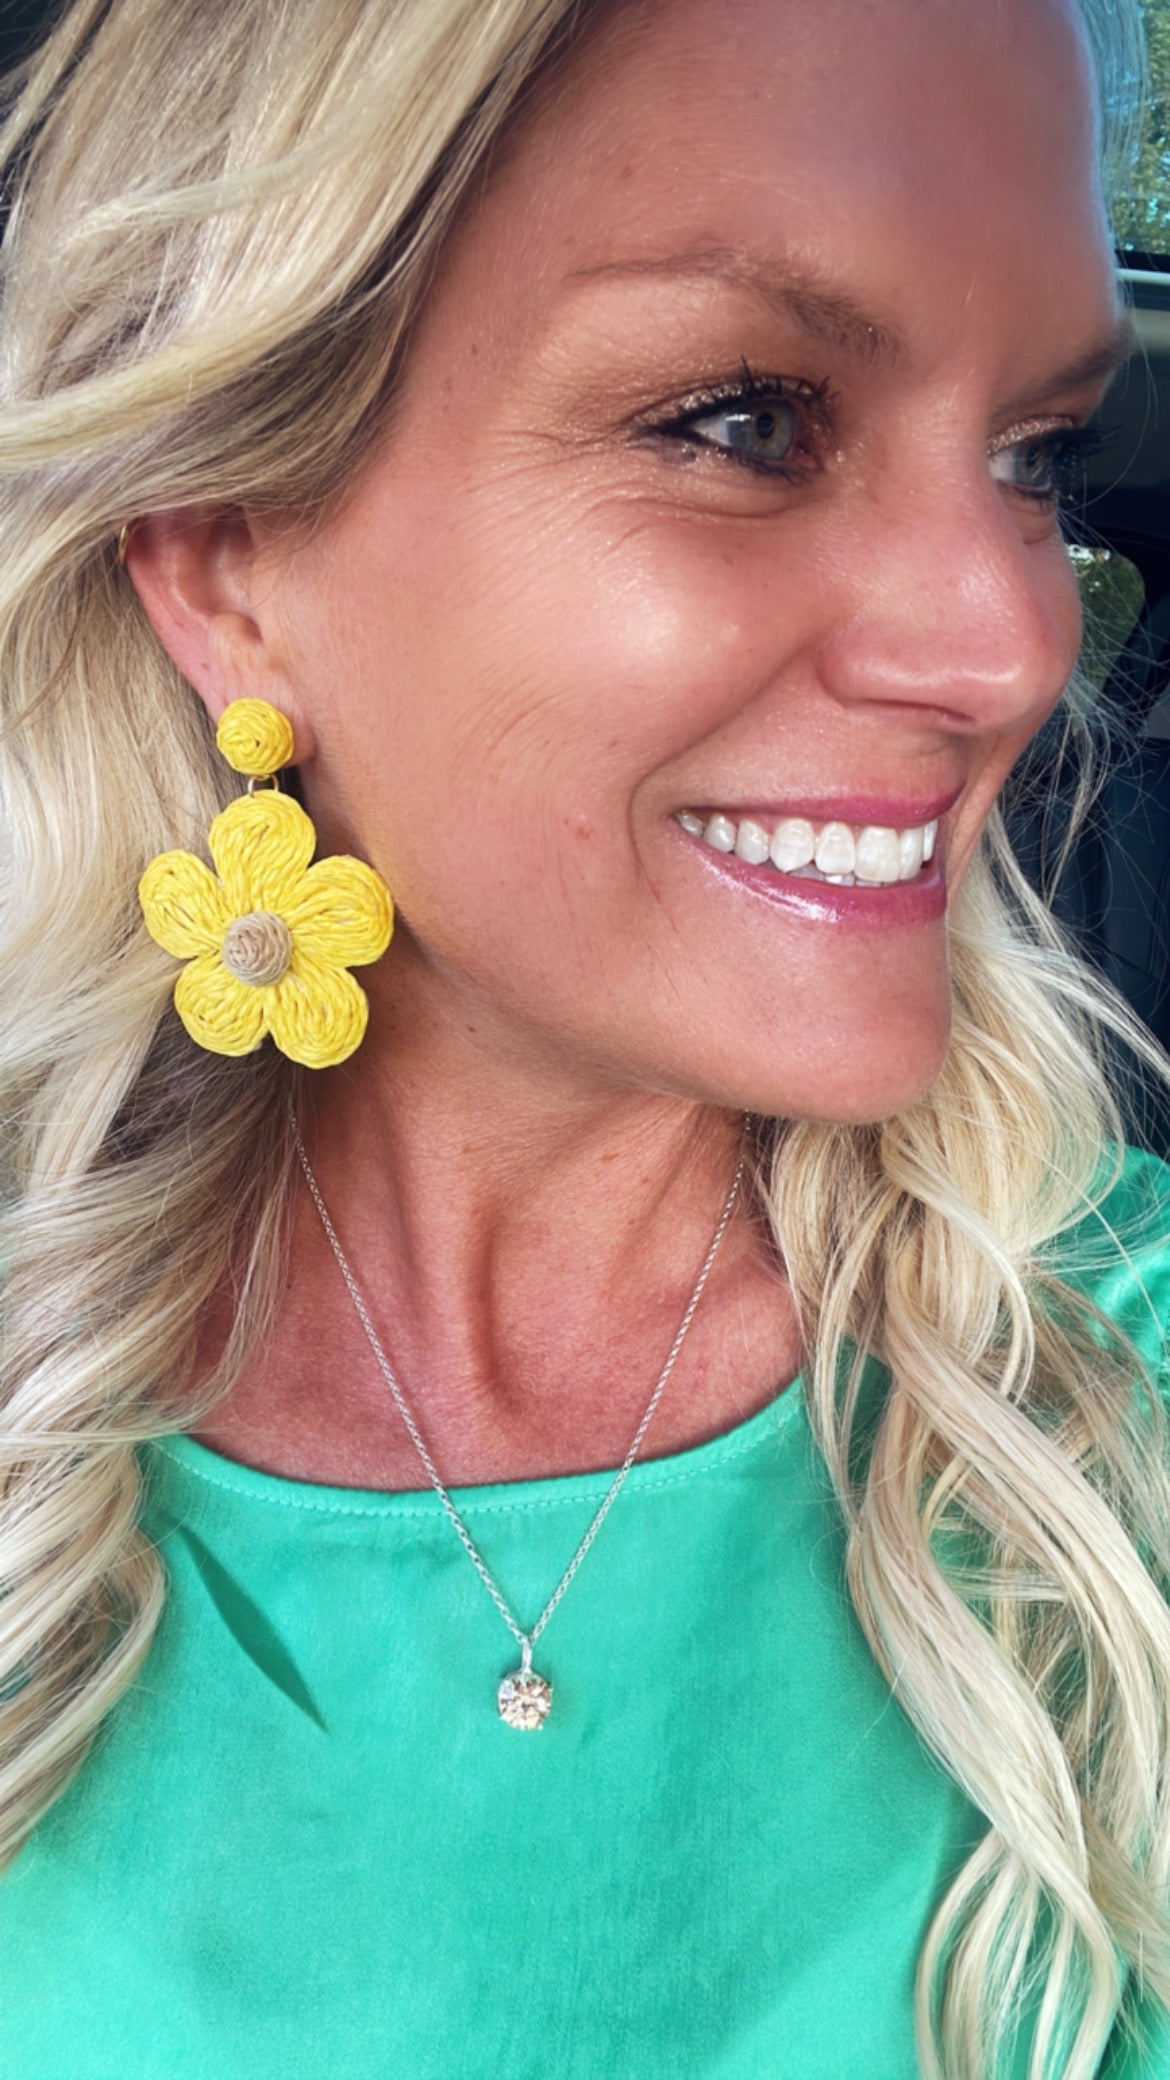 Raffia Flower Earrings - Yellow